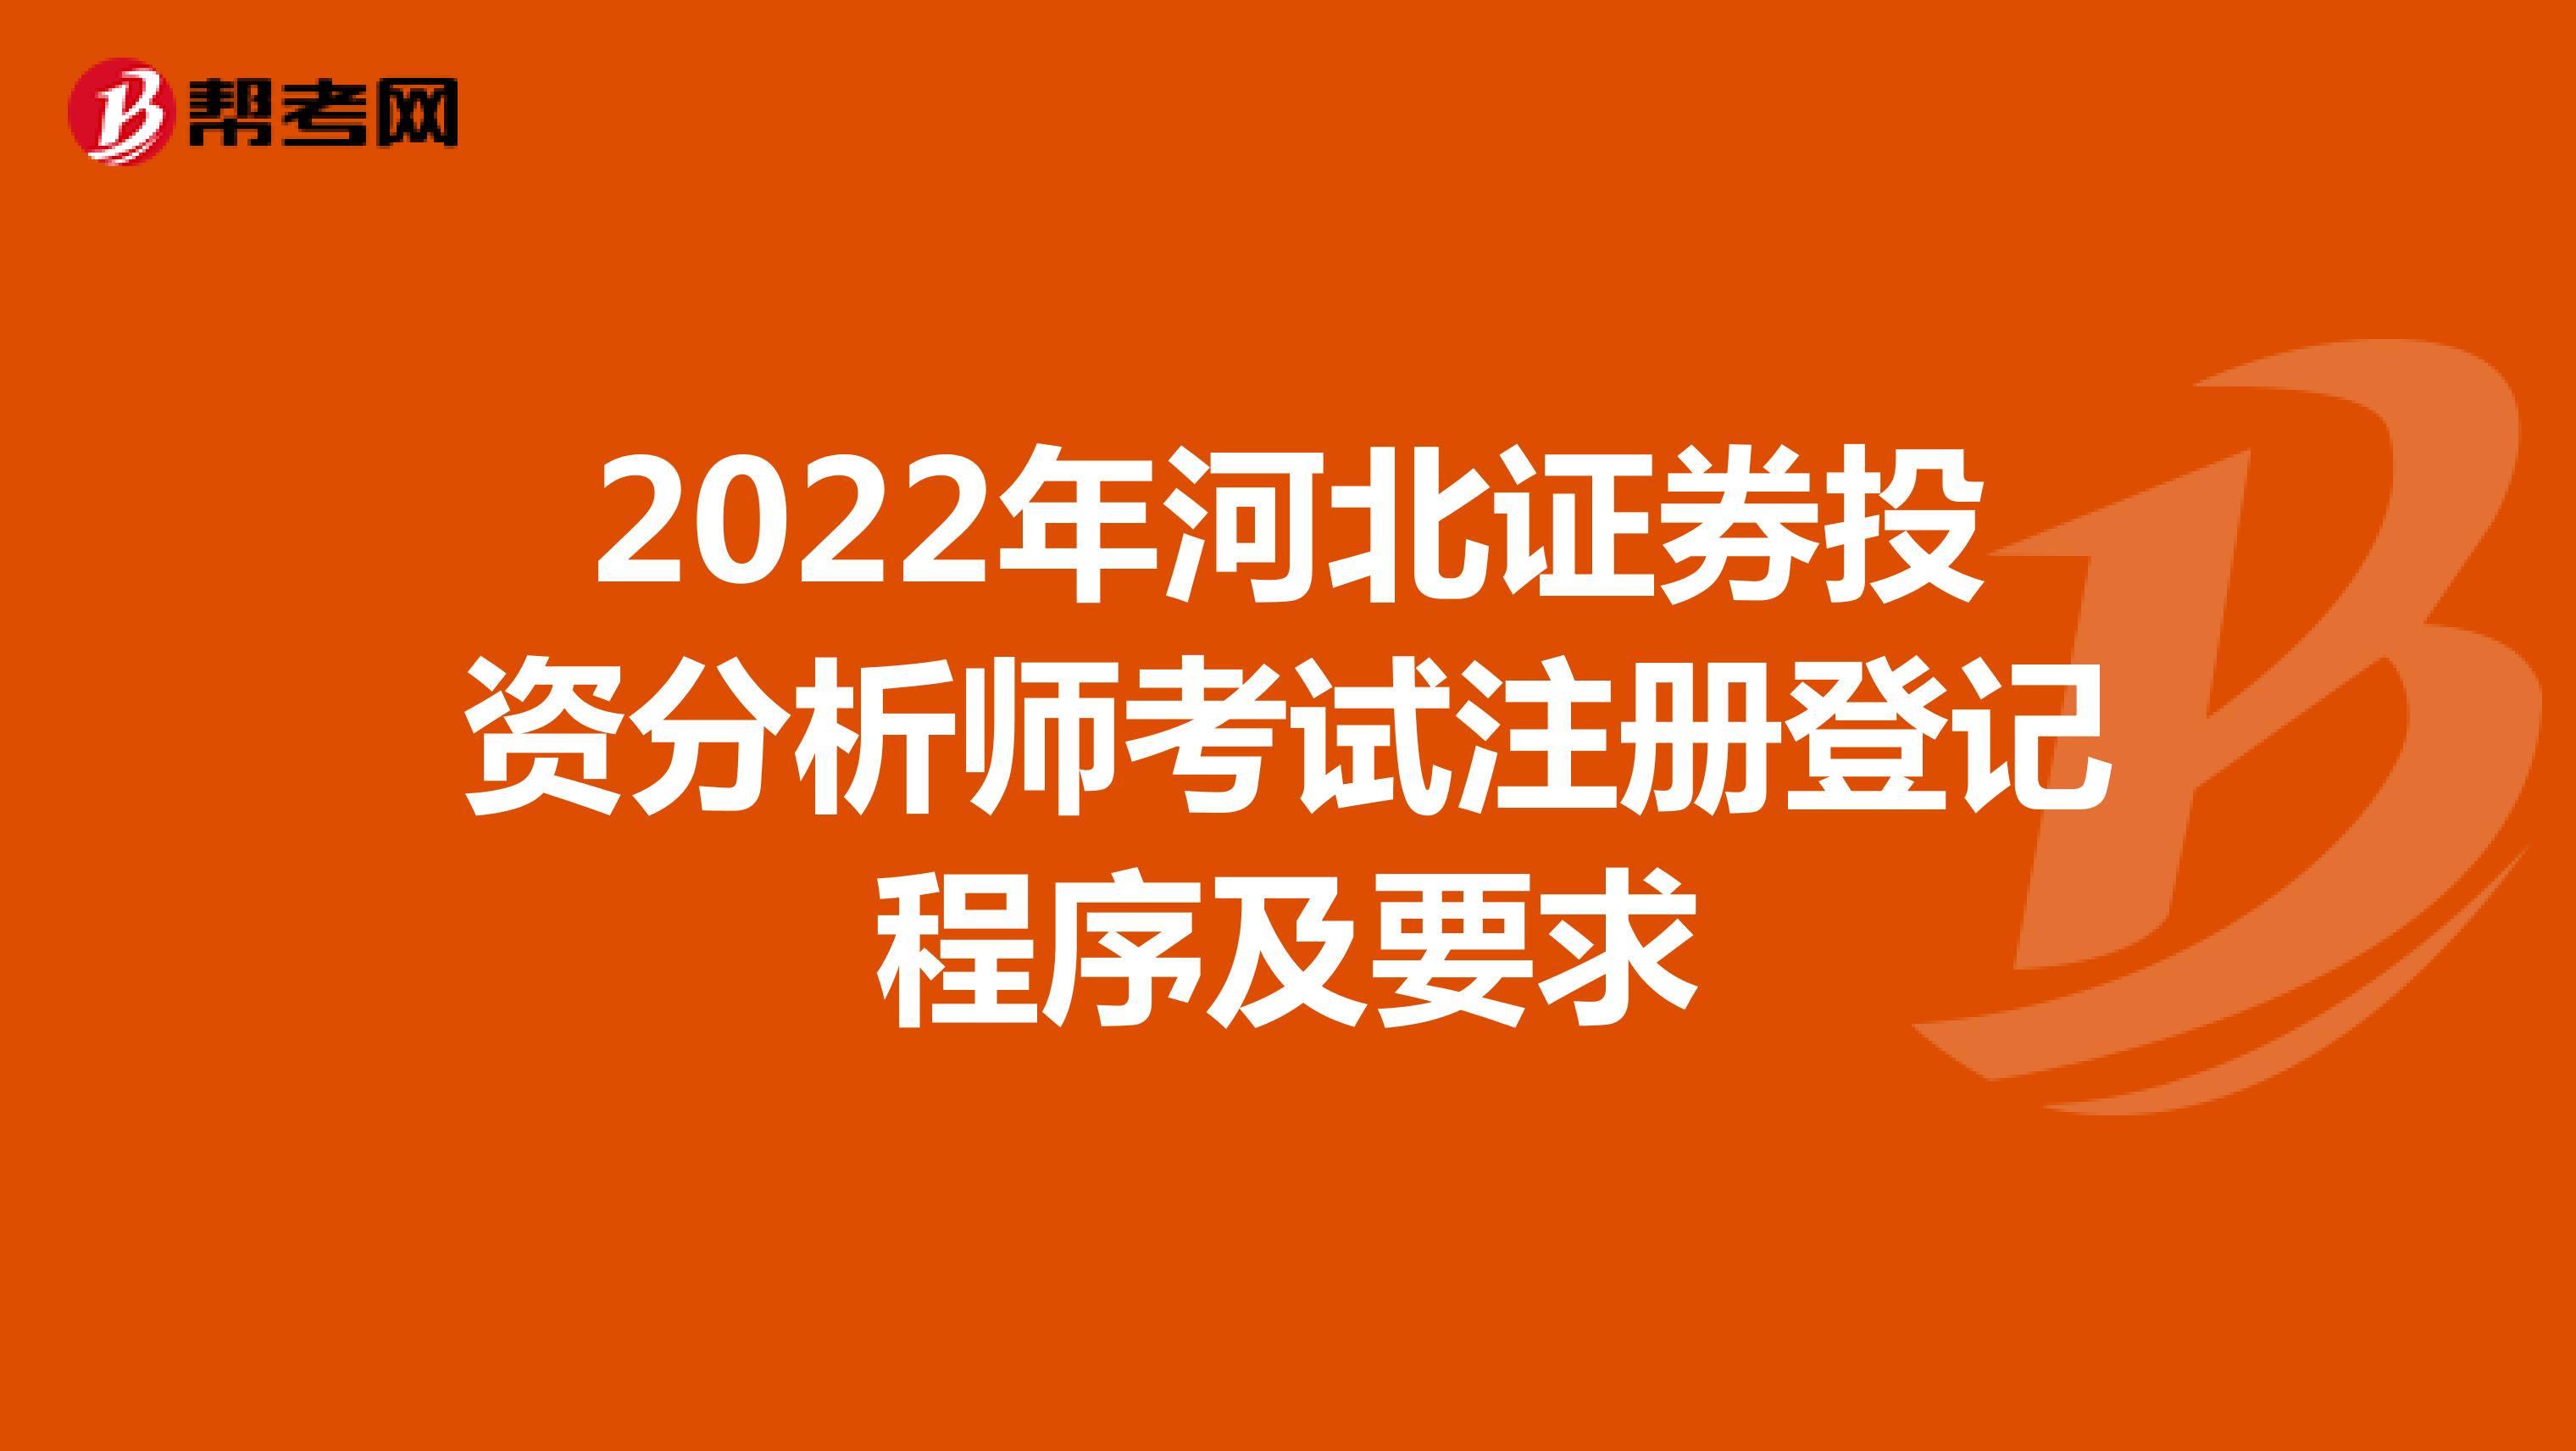 2022年河北证券投资分析师考试注册登记程序及要求